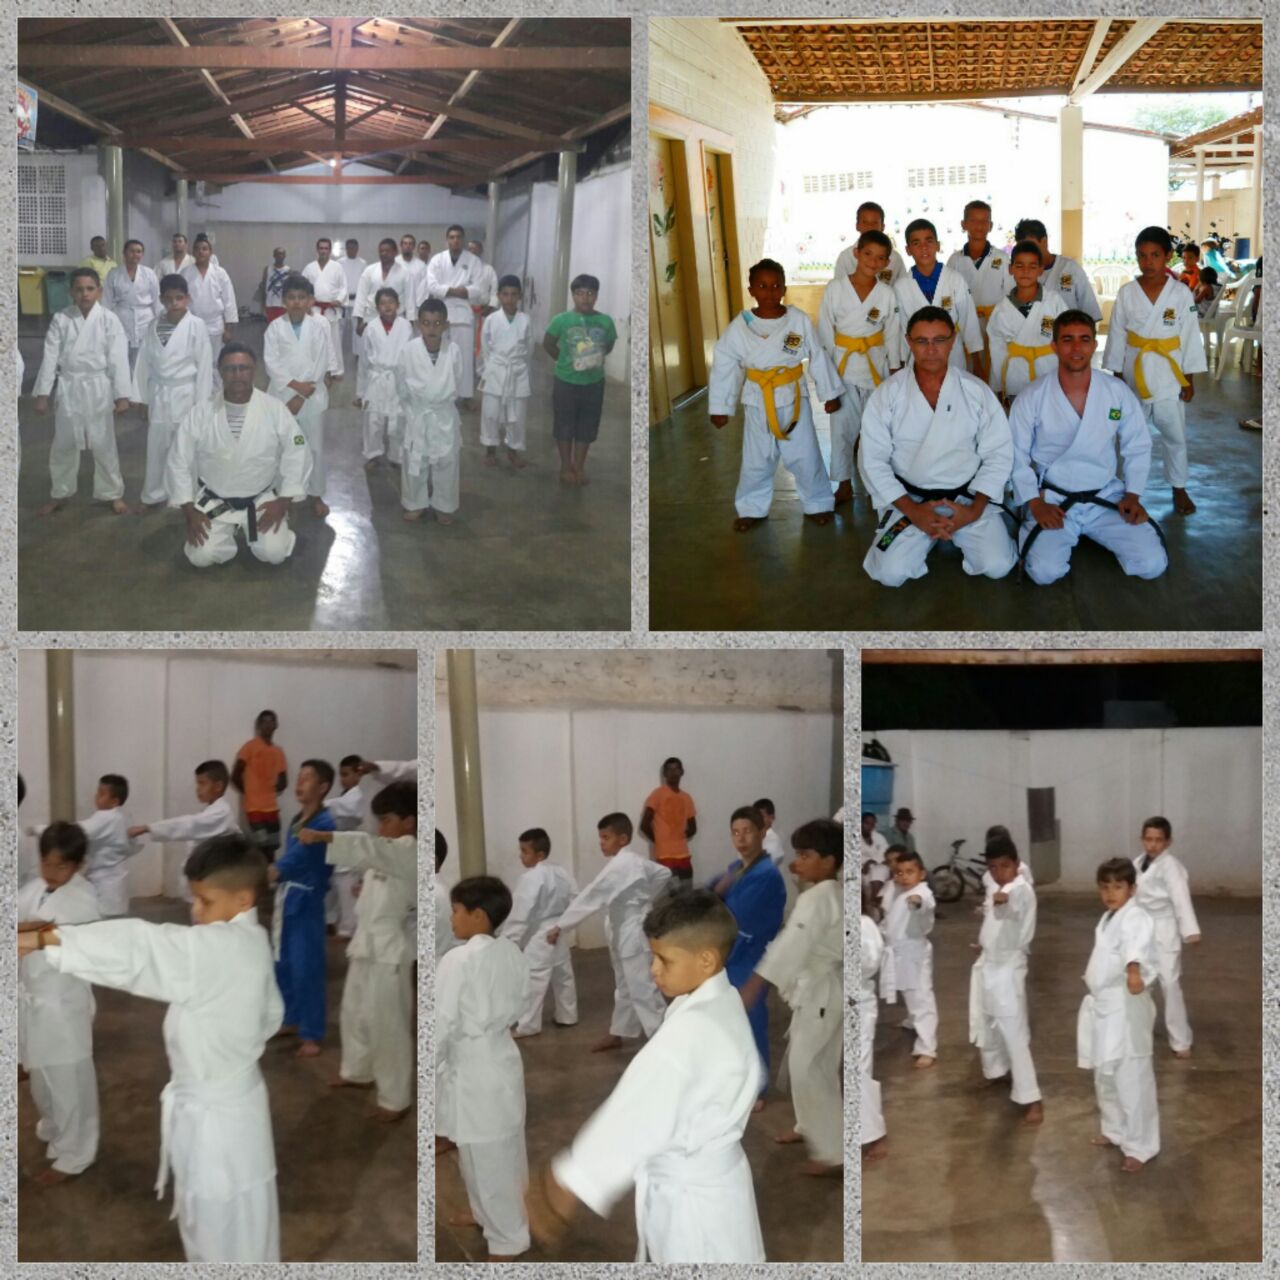 karate_alunos_henrique Secretaria de Desenvolvimento Social promove evento com alunos de Karate em Monteiro